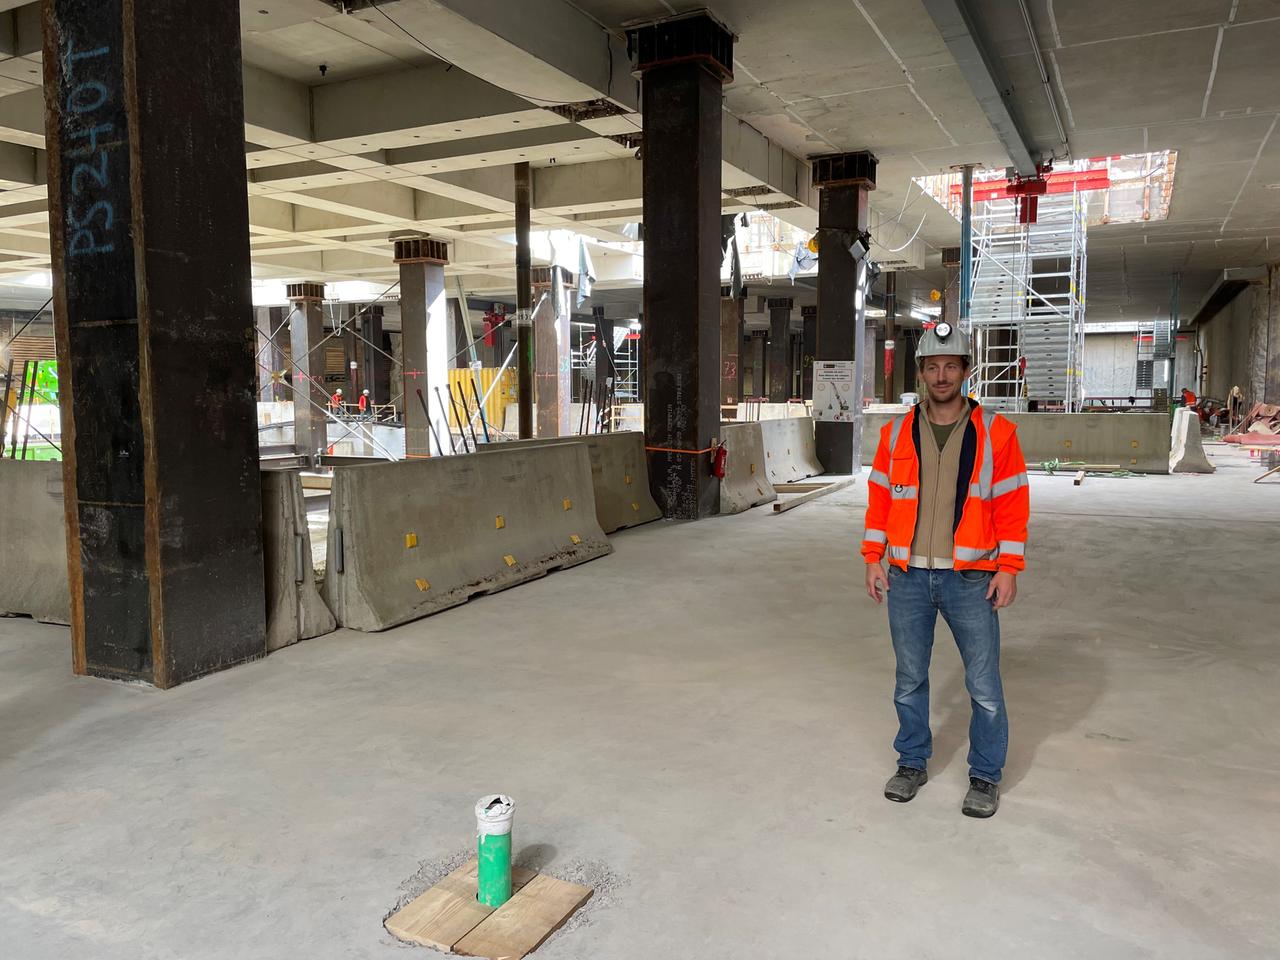 Bau-Ingenieur Alexander Jambor auf der Baustelle des zukünftigen S-Bahnhofs „Marienhof“ in München